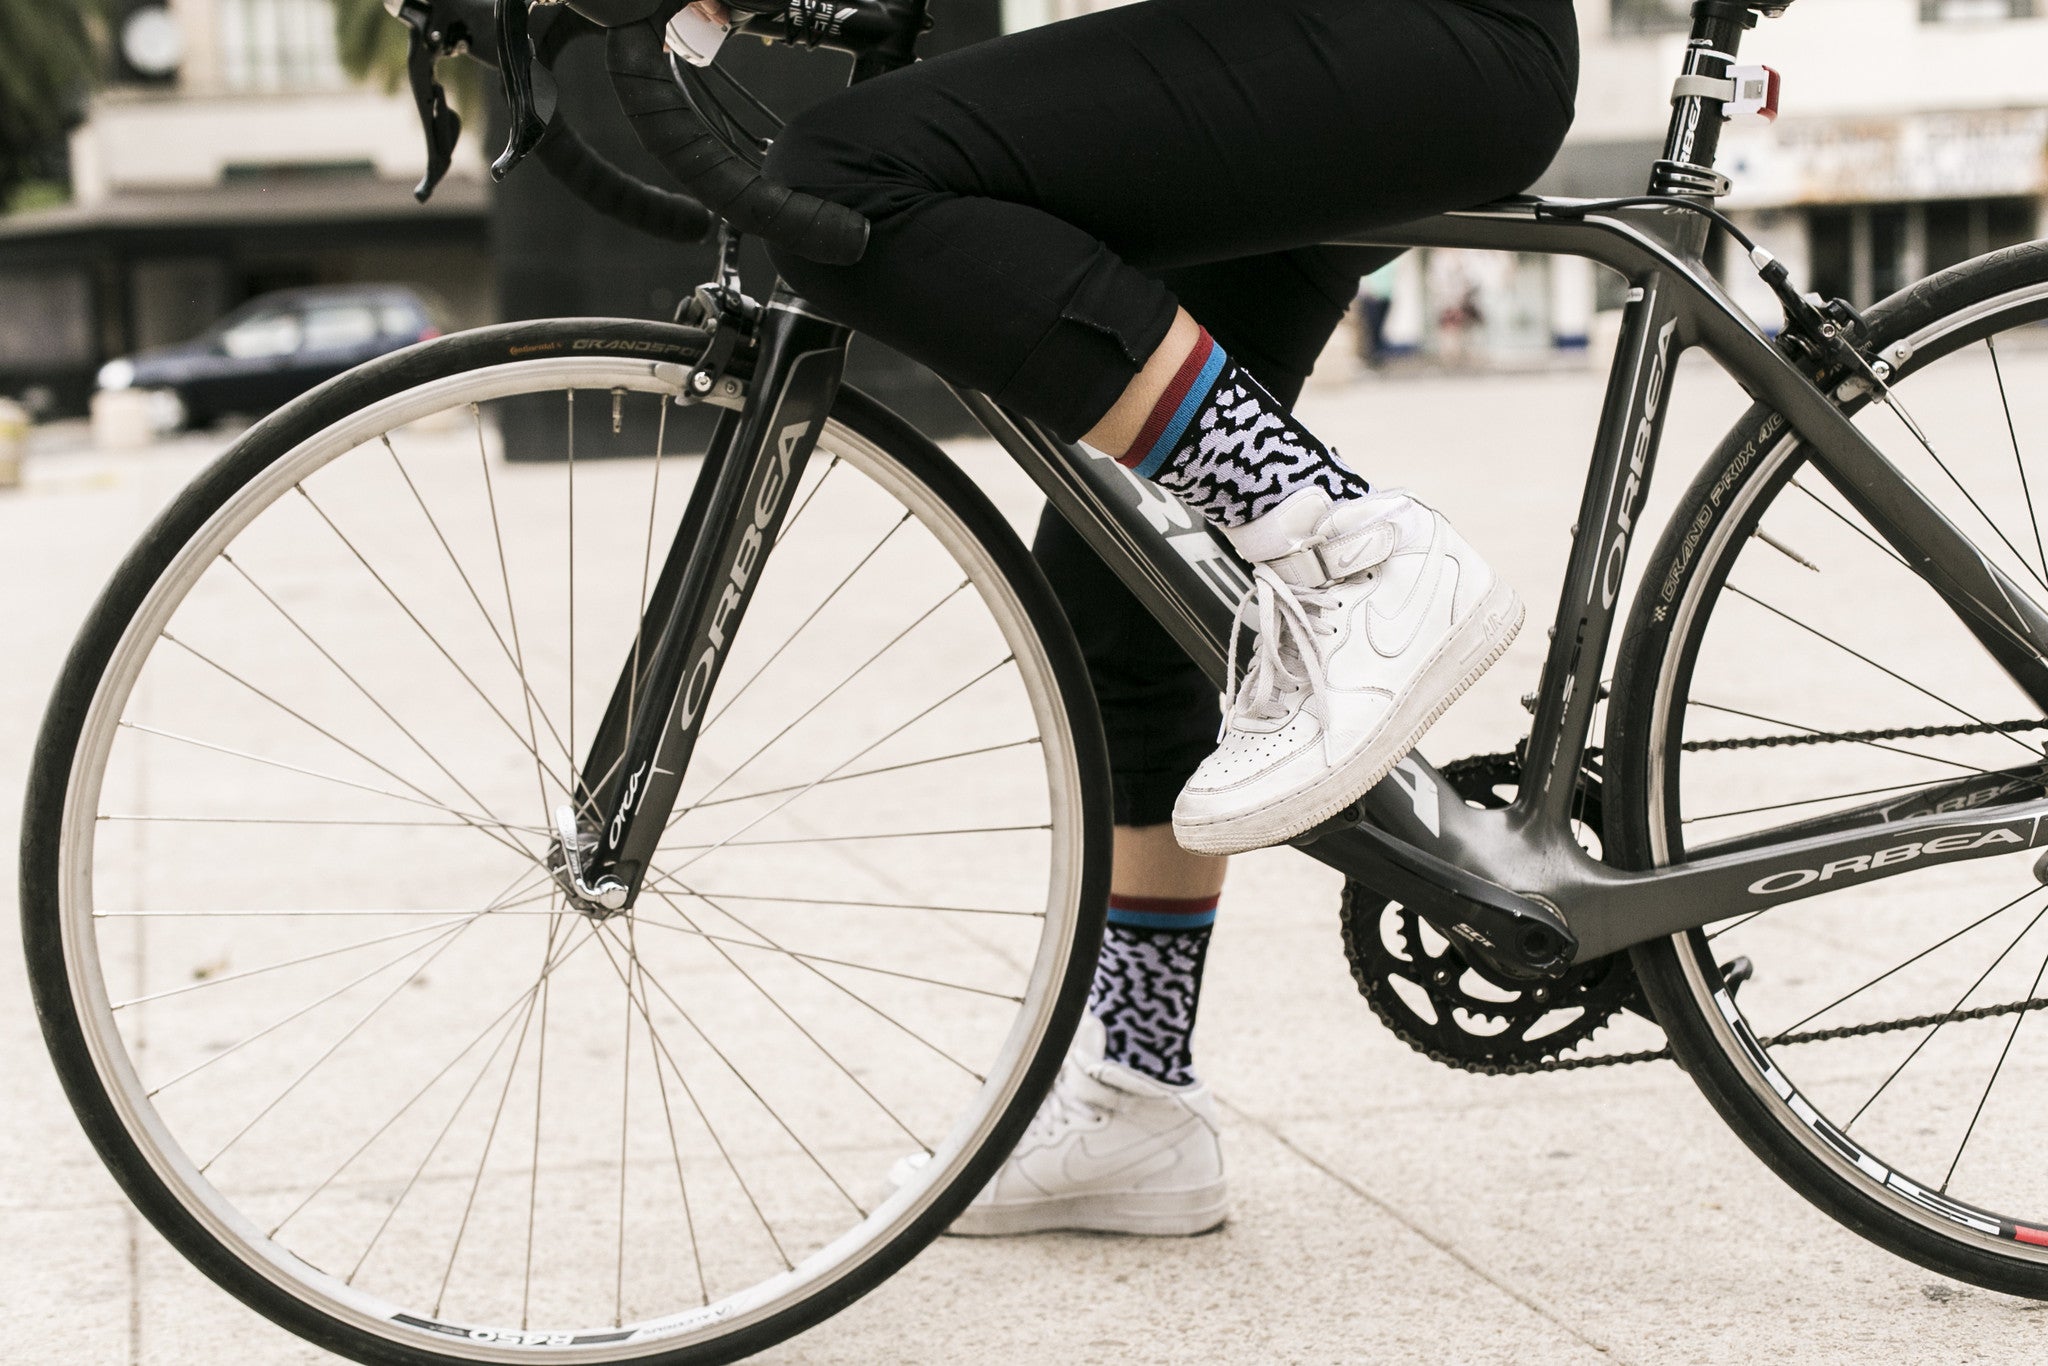 NVAYRK X CC Cycling Socks (Limited Edition)